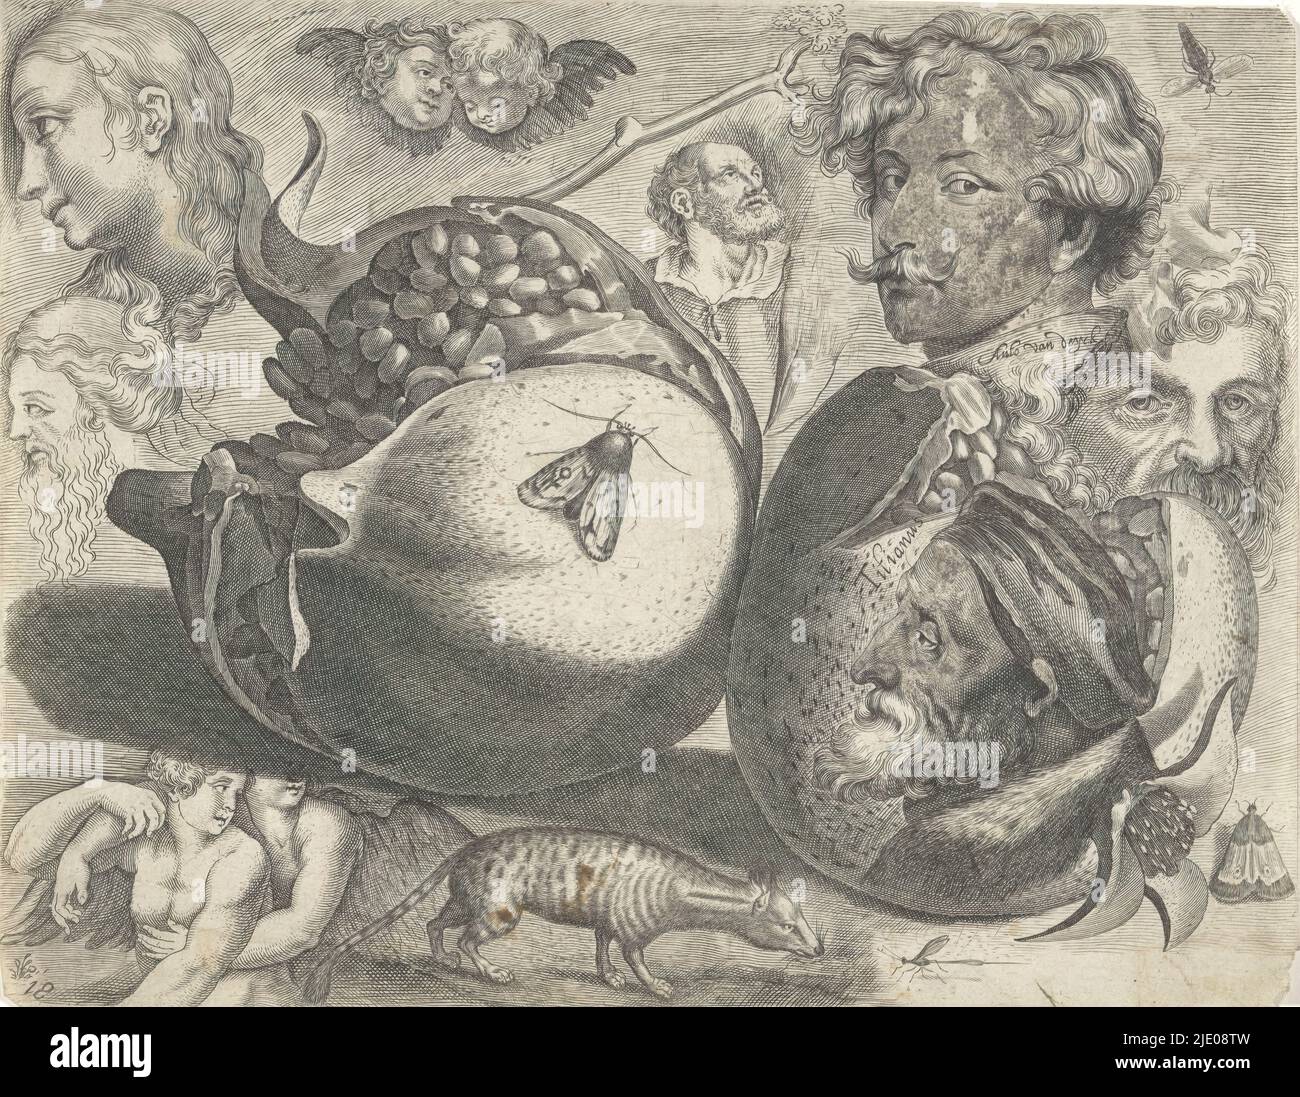 Hoja de estudio con ejemplos de dibujo: Cabezas, figuras, frutas, animales, ejemplos de dibujo (título de serie), decimoctavo estampado de una serie de ejemplos de dibujo de tamaño desconocido. Hoja de estudio con cabezas, figuras y animales. En el centro izquierda una granada con mariposa en la parte superior. Arriba a la derecha retrato de Anthony van Dyck, abajo retrato de Tiziano. Alrededor de él varios insectos, animales y figuras incluyendo un civet., fabricante de la impresión: Michael Snijders, editor: Michael Snijders, después de la impresión por: Adriaen Collaert, Amberes, después de 1610 - antes de 1672, papel, grabado, altura 184 mm x ancho 237 mm Foto de stock